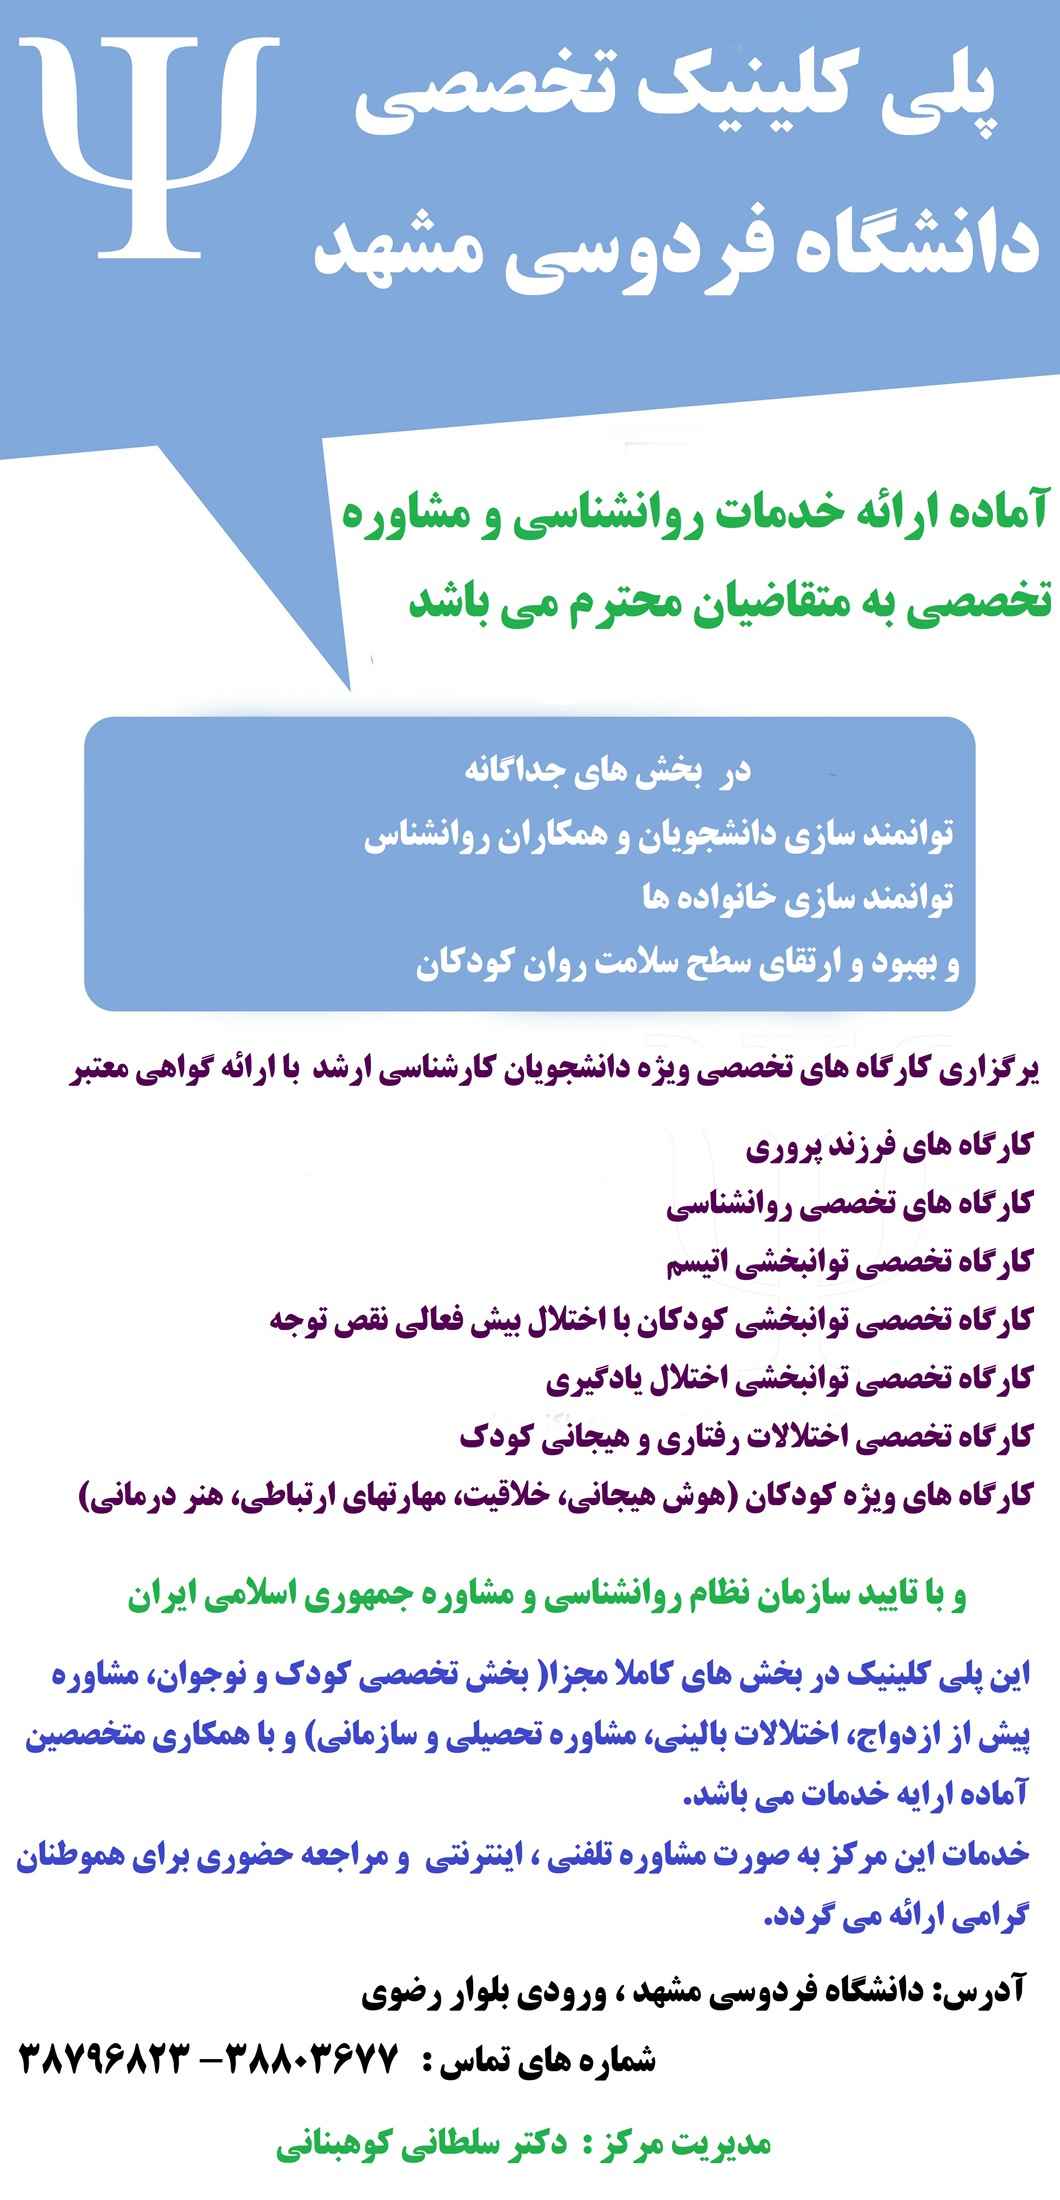  پلی کلینیک تخصصی دانشگاه فردوسی مشهد